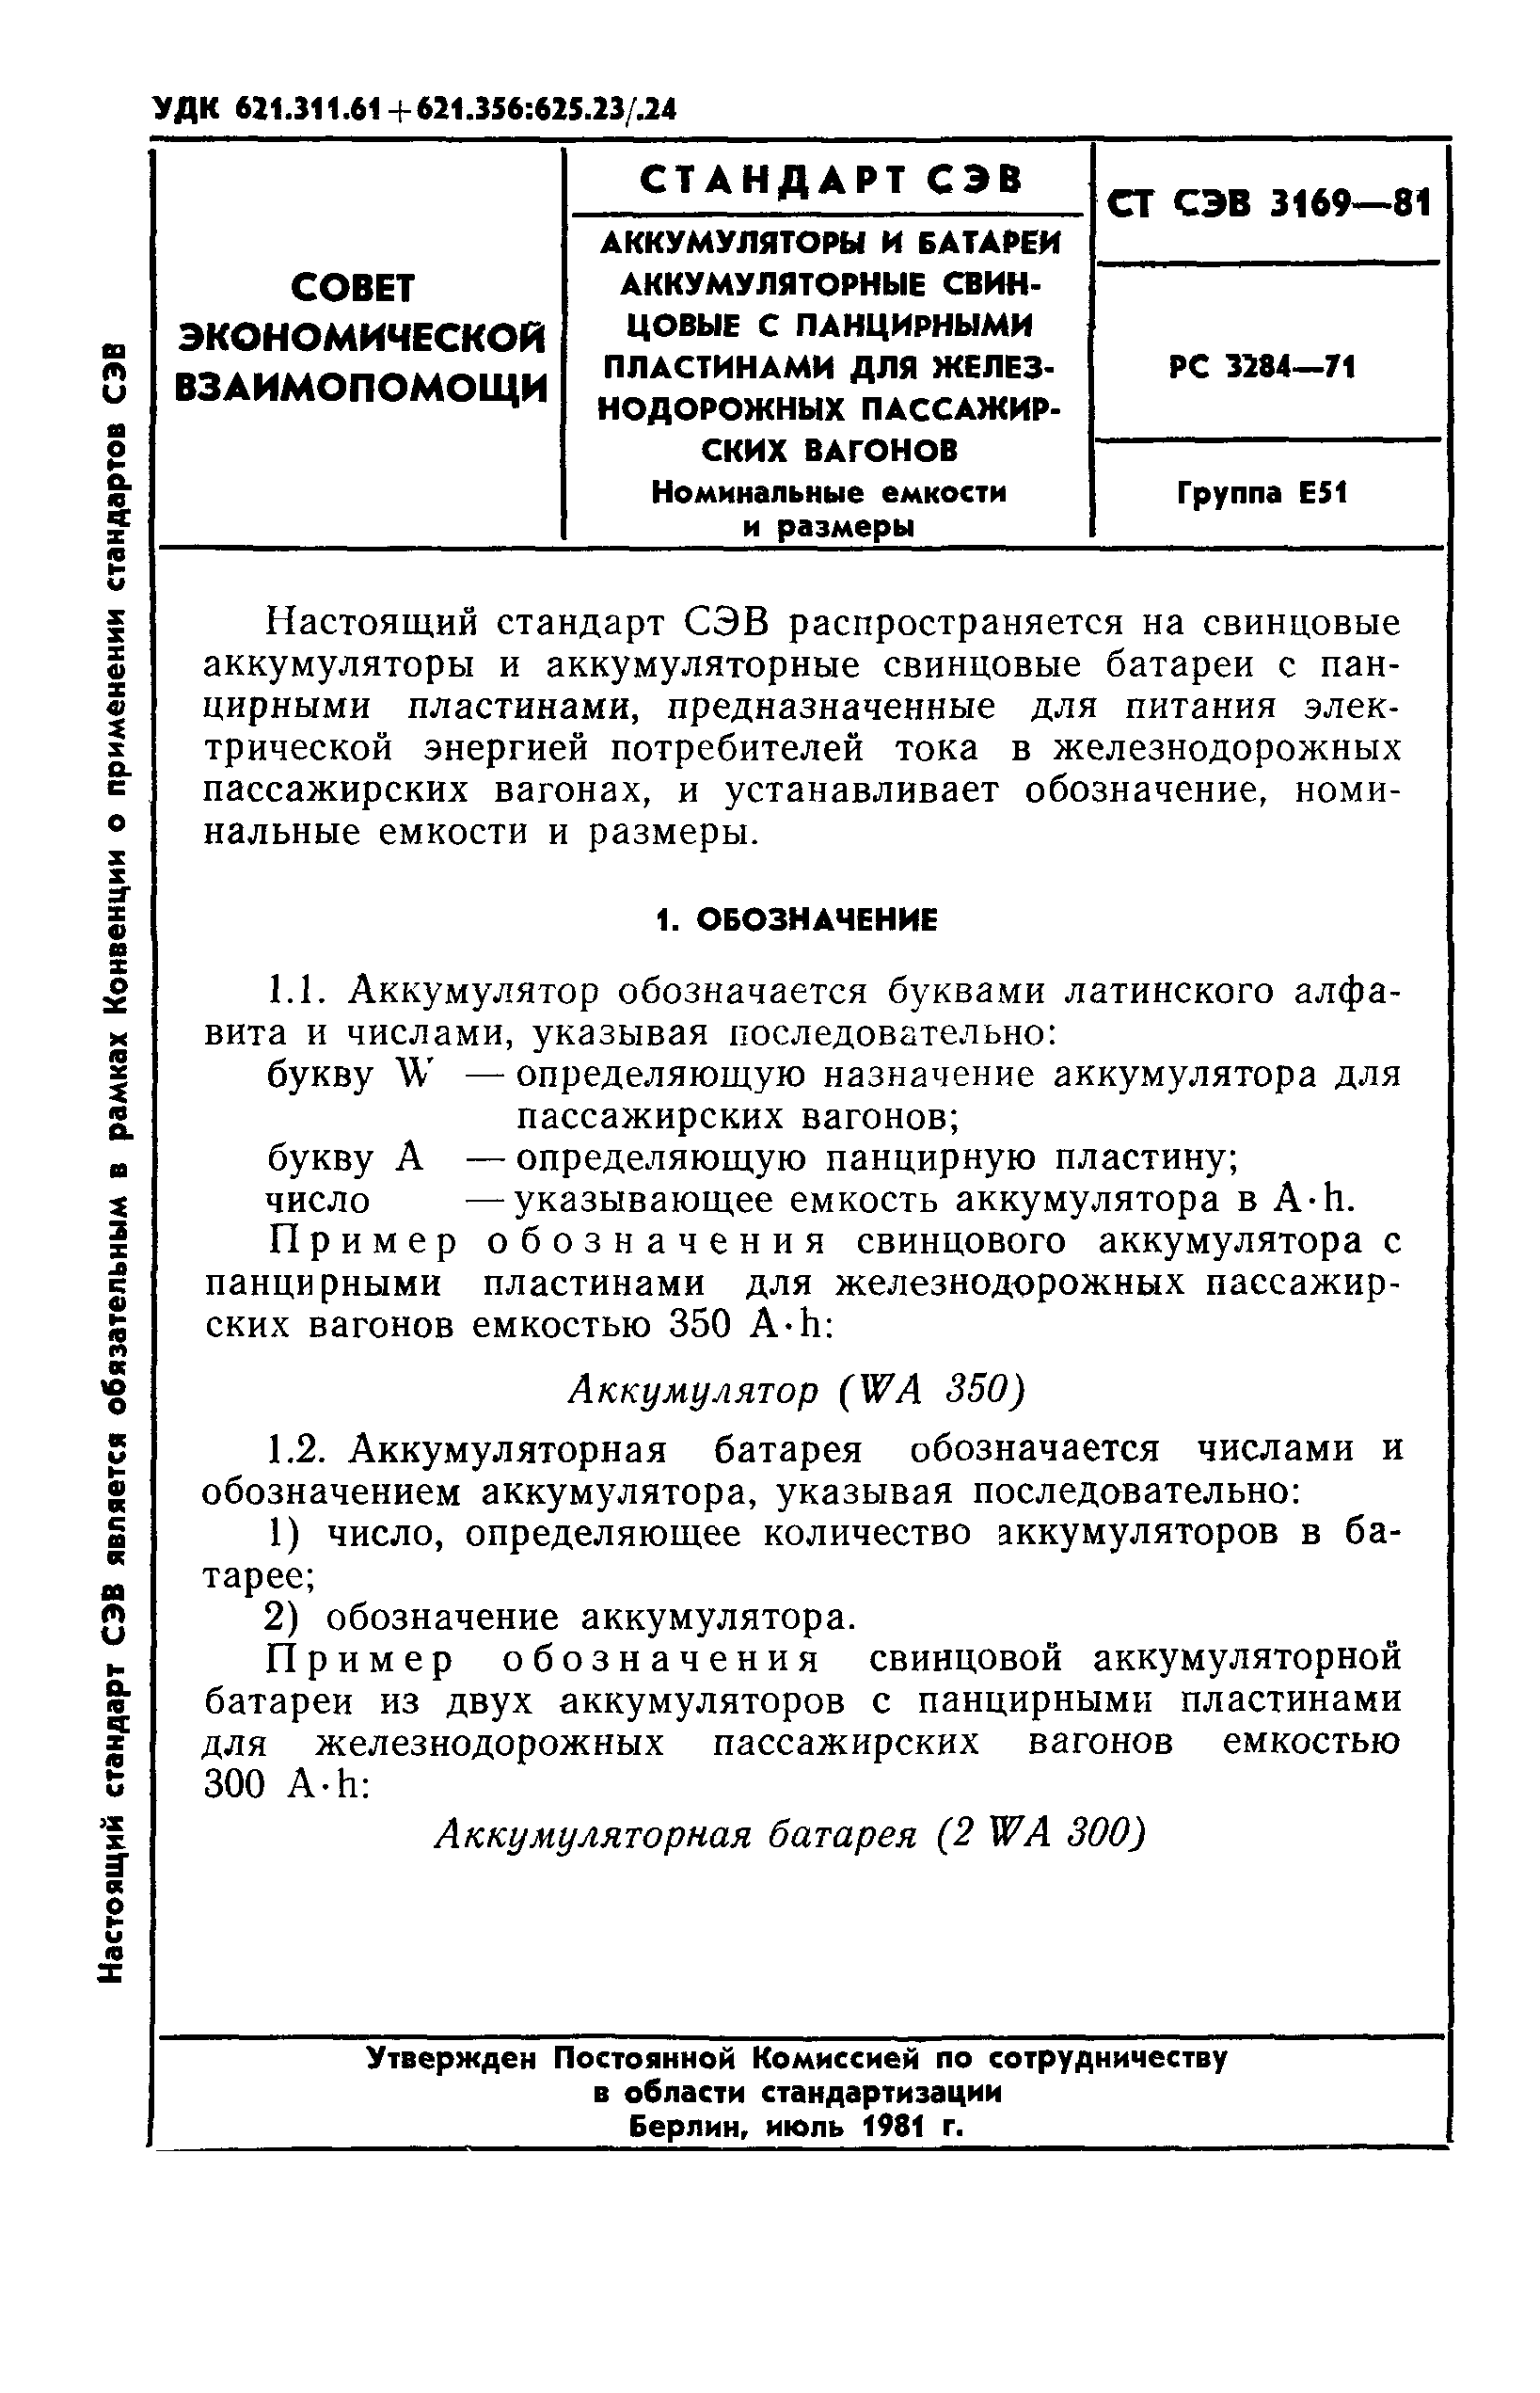 СТ СЭВ 3169-81